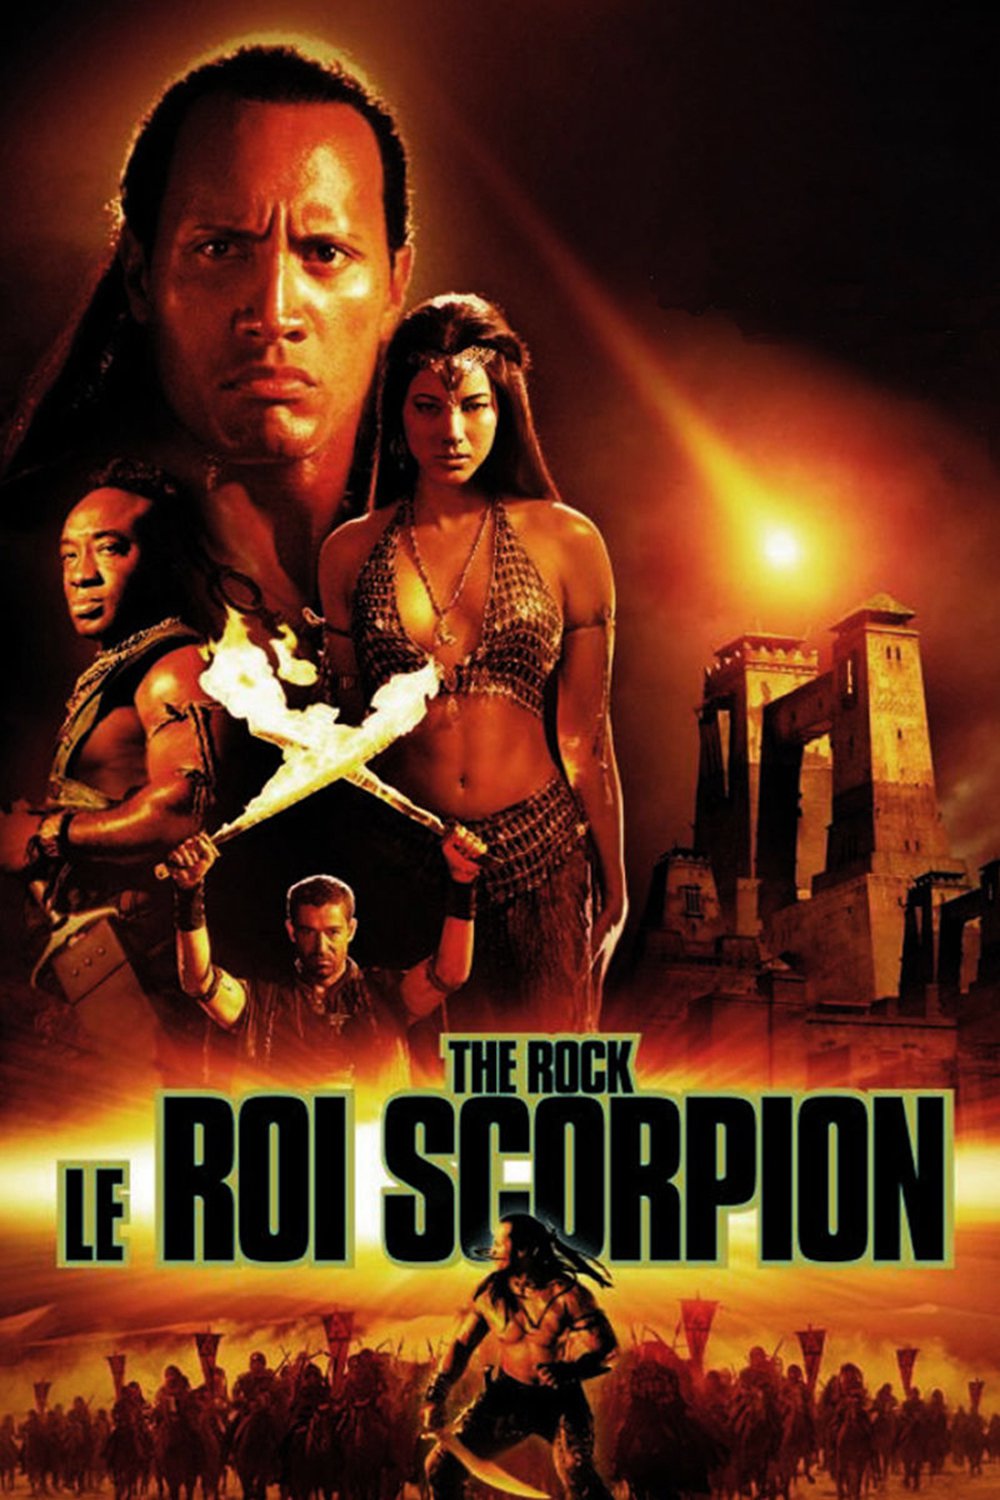 🛈 Le Roi Scorpion